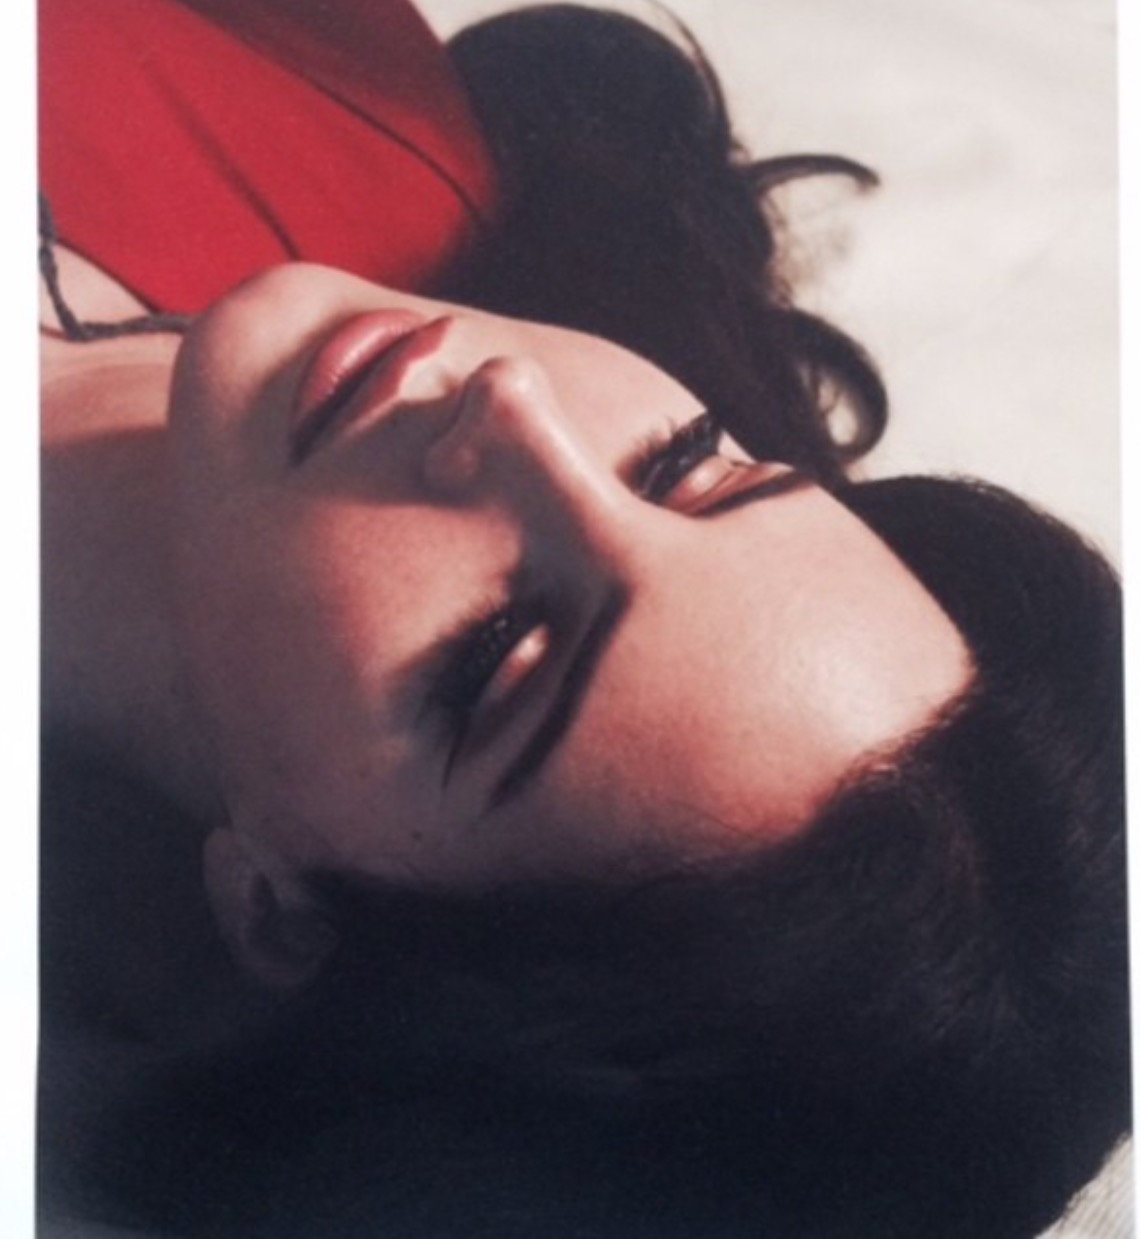 Lana Del Rey wearing false eyelashes